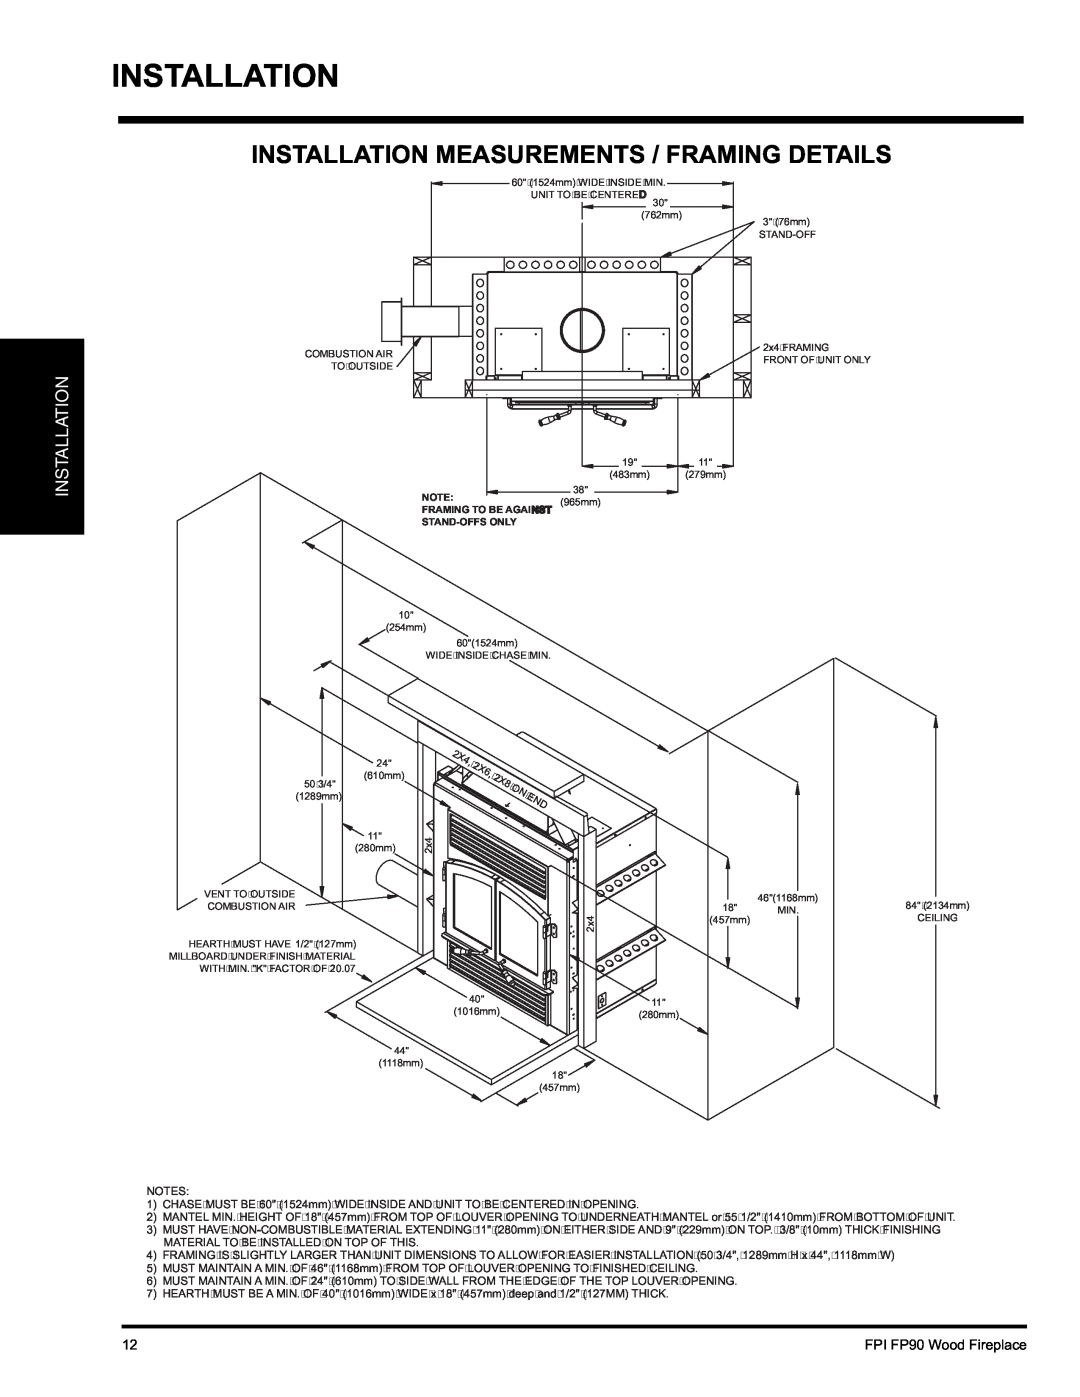 Regency installation manual Installation Measurements / Framing Details, FPI FP90 Wood Fireplace 